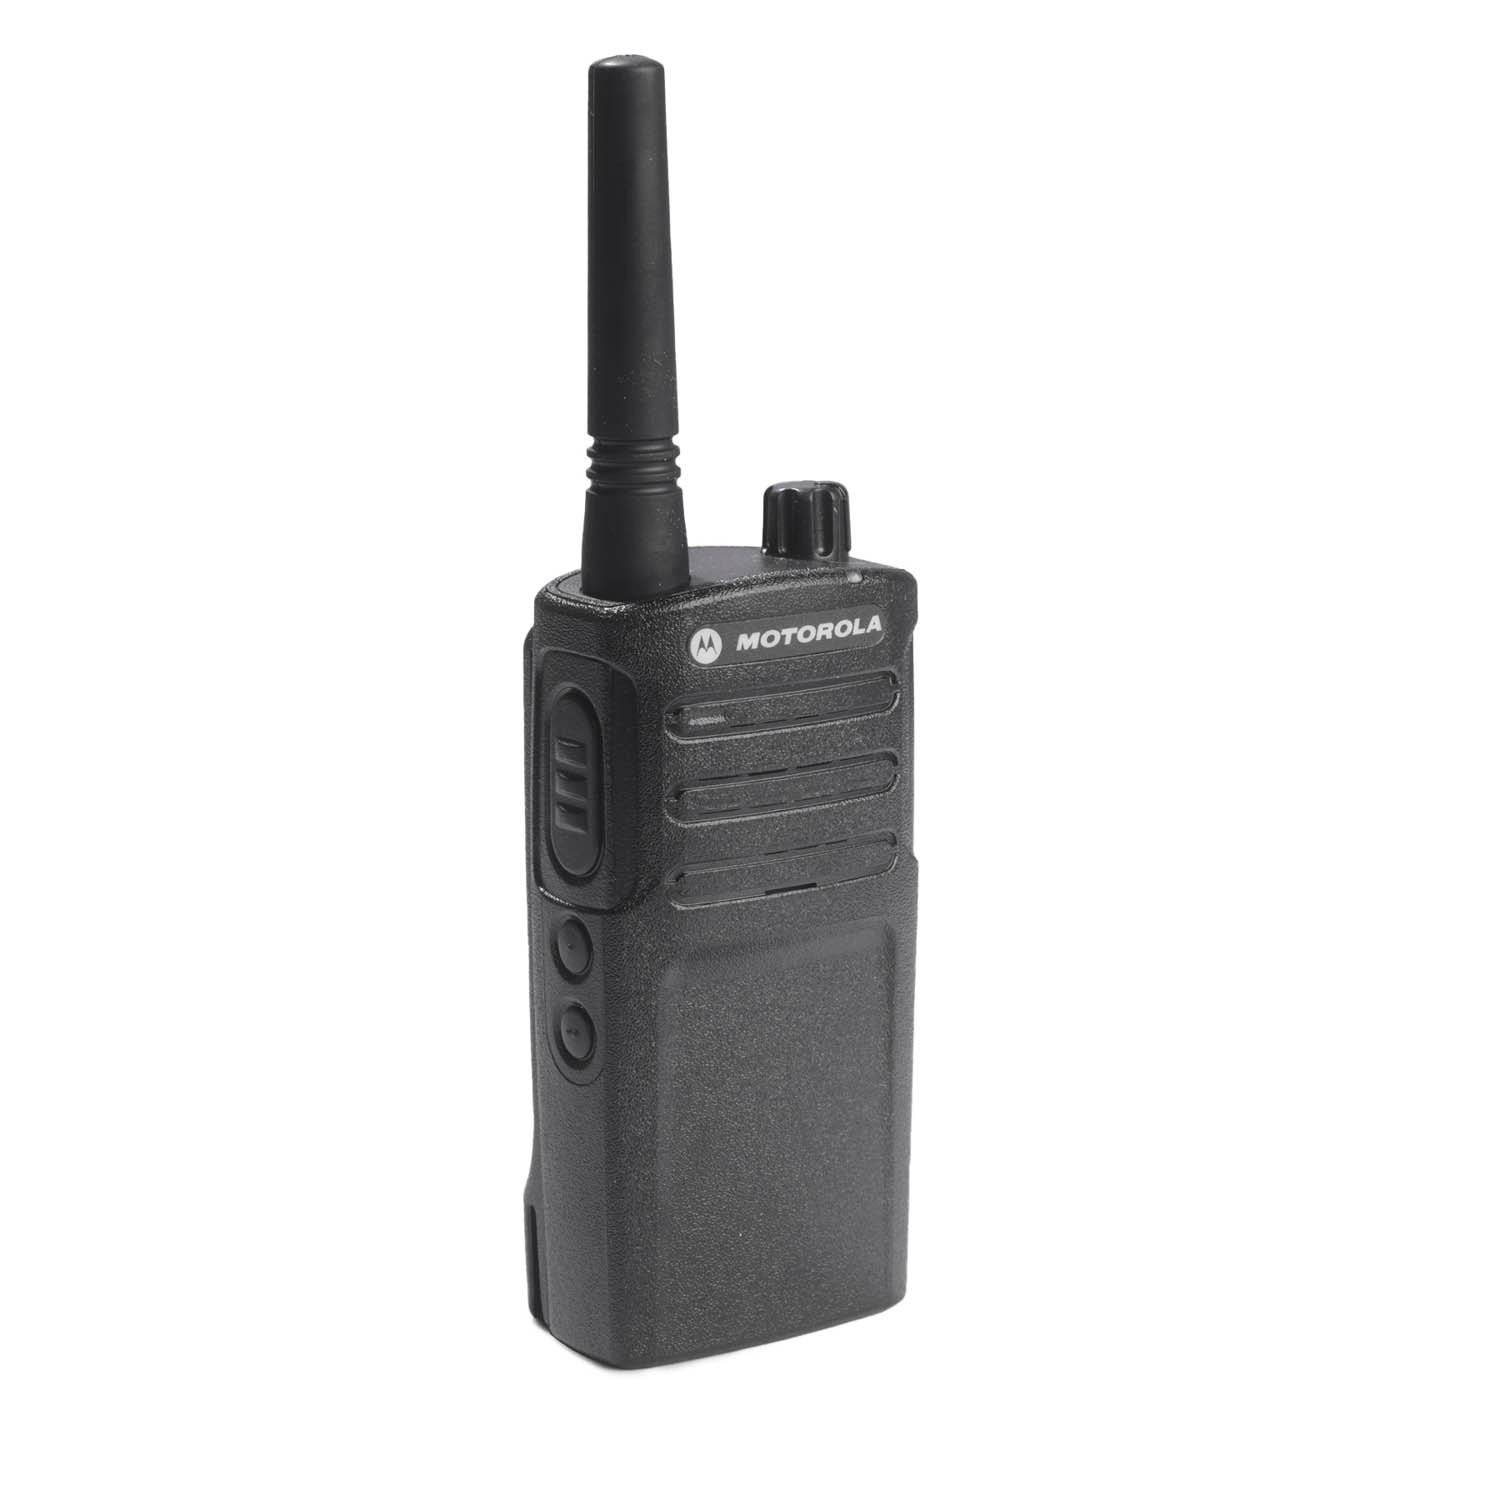 Motorola RMU2040 UHF 4 Channel Radio